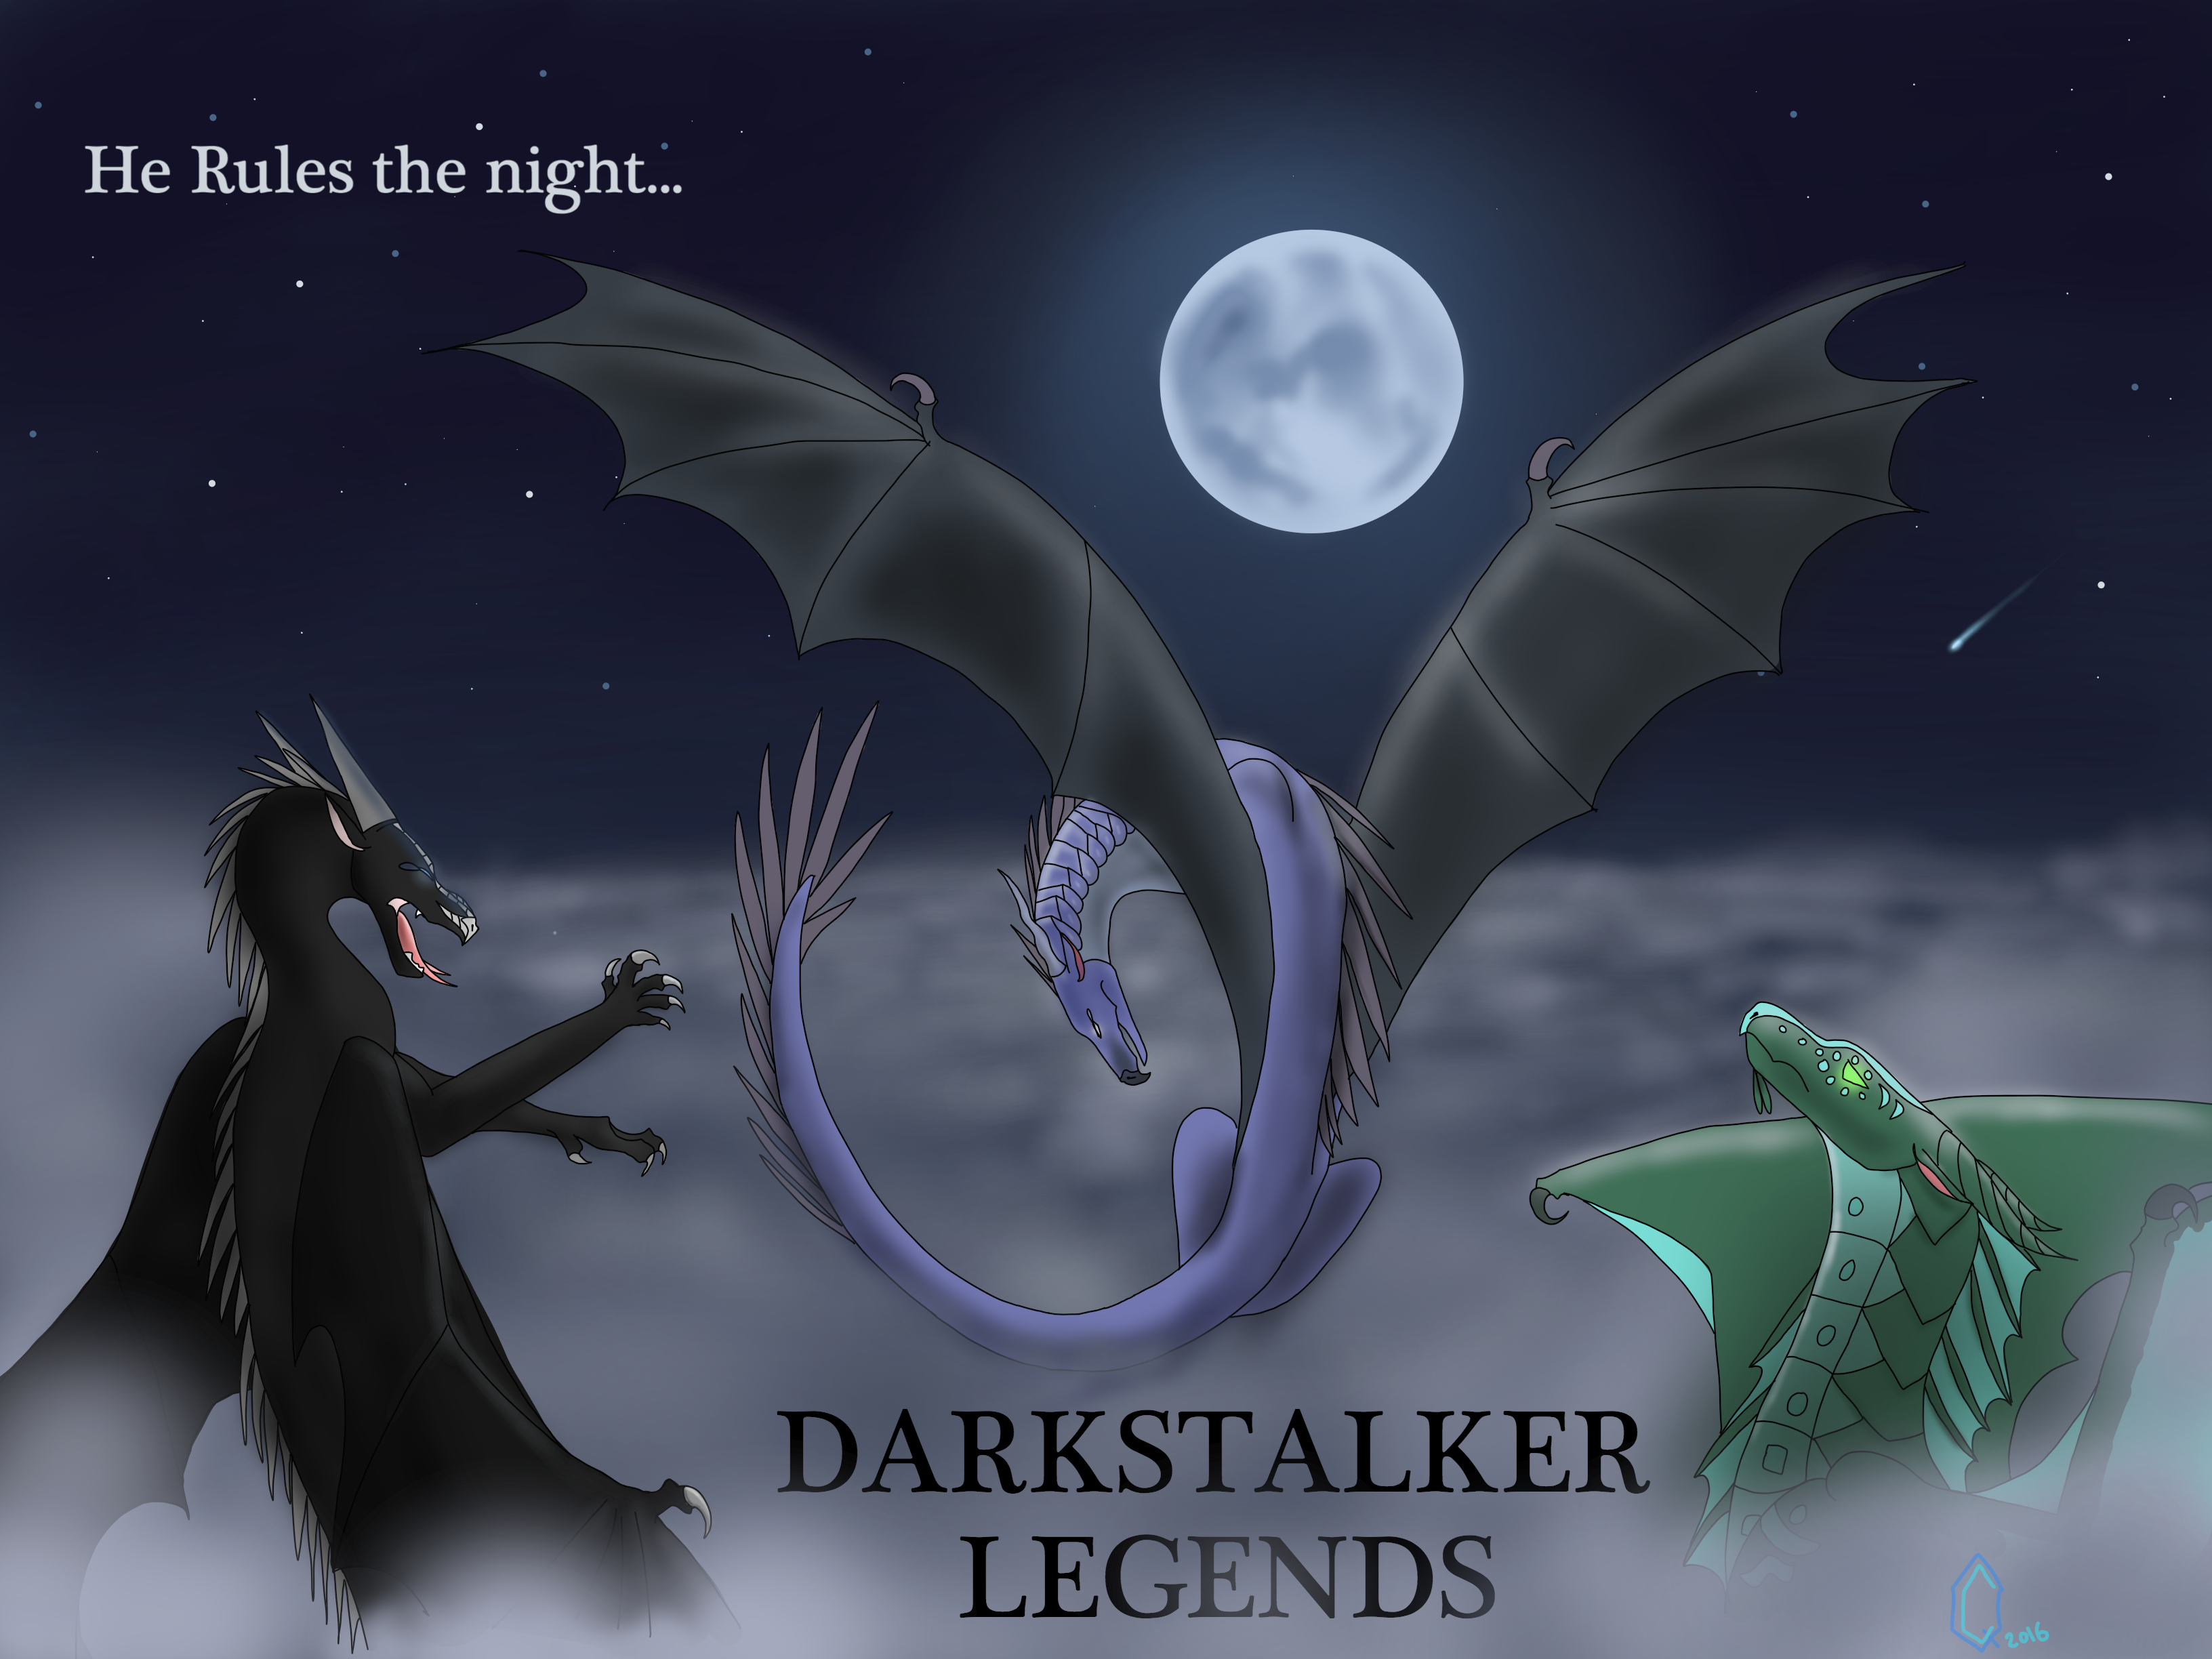 Darkstalker Art Competition | Wings of Fire Wiki | Fandom powered by Wikia